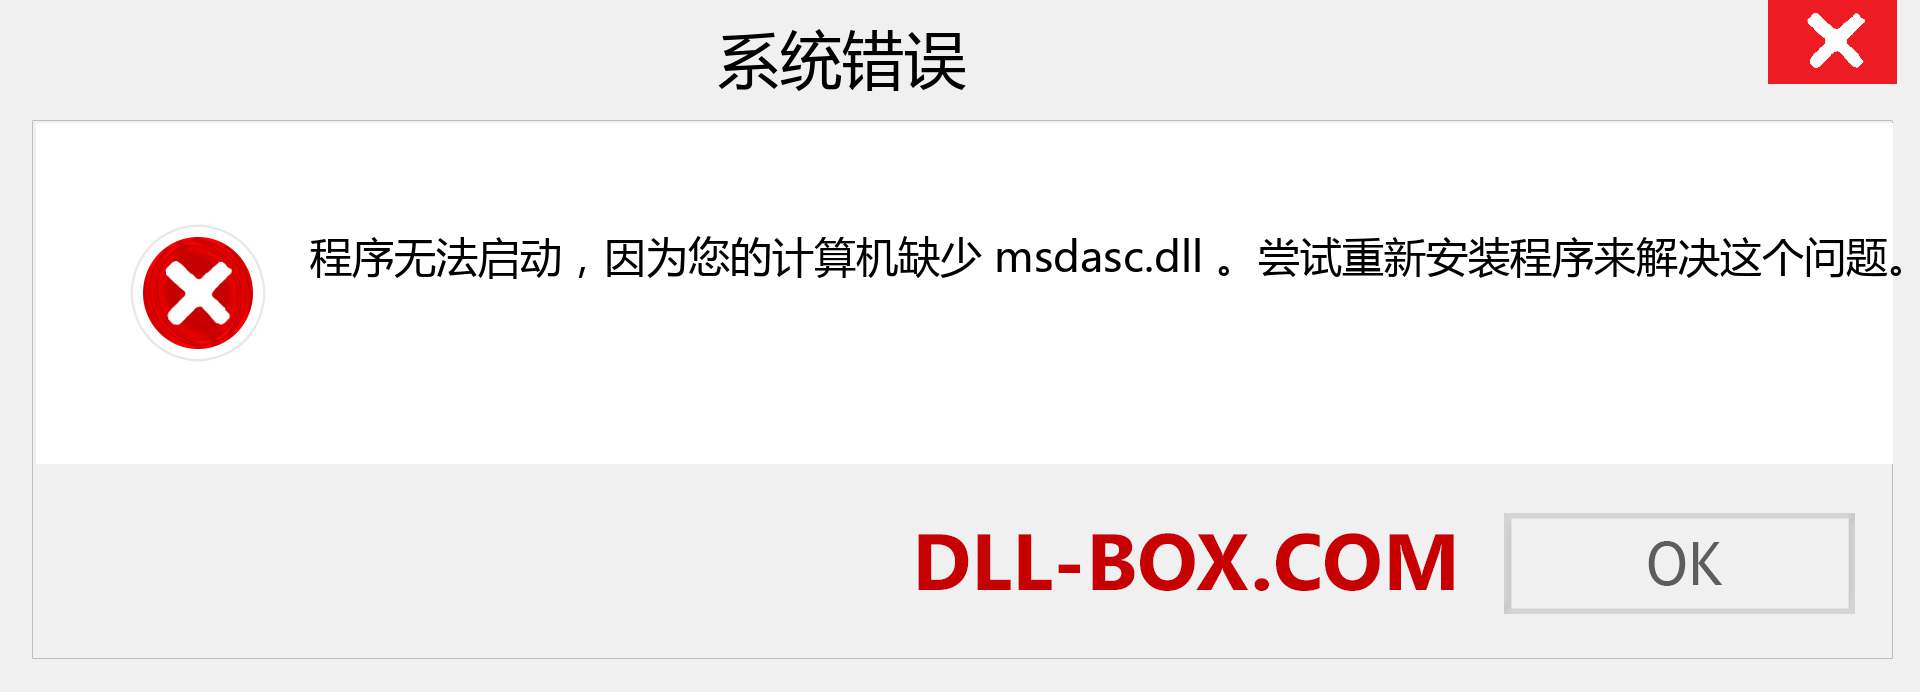 msdasc.dll 文件丢失？。 适用于 Windows 7、8、10 的下载 - 修复 Windows、照片、图像上的 msdasc dll 丢失错误